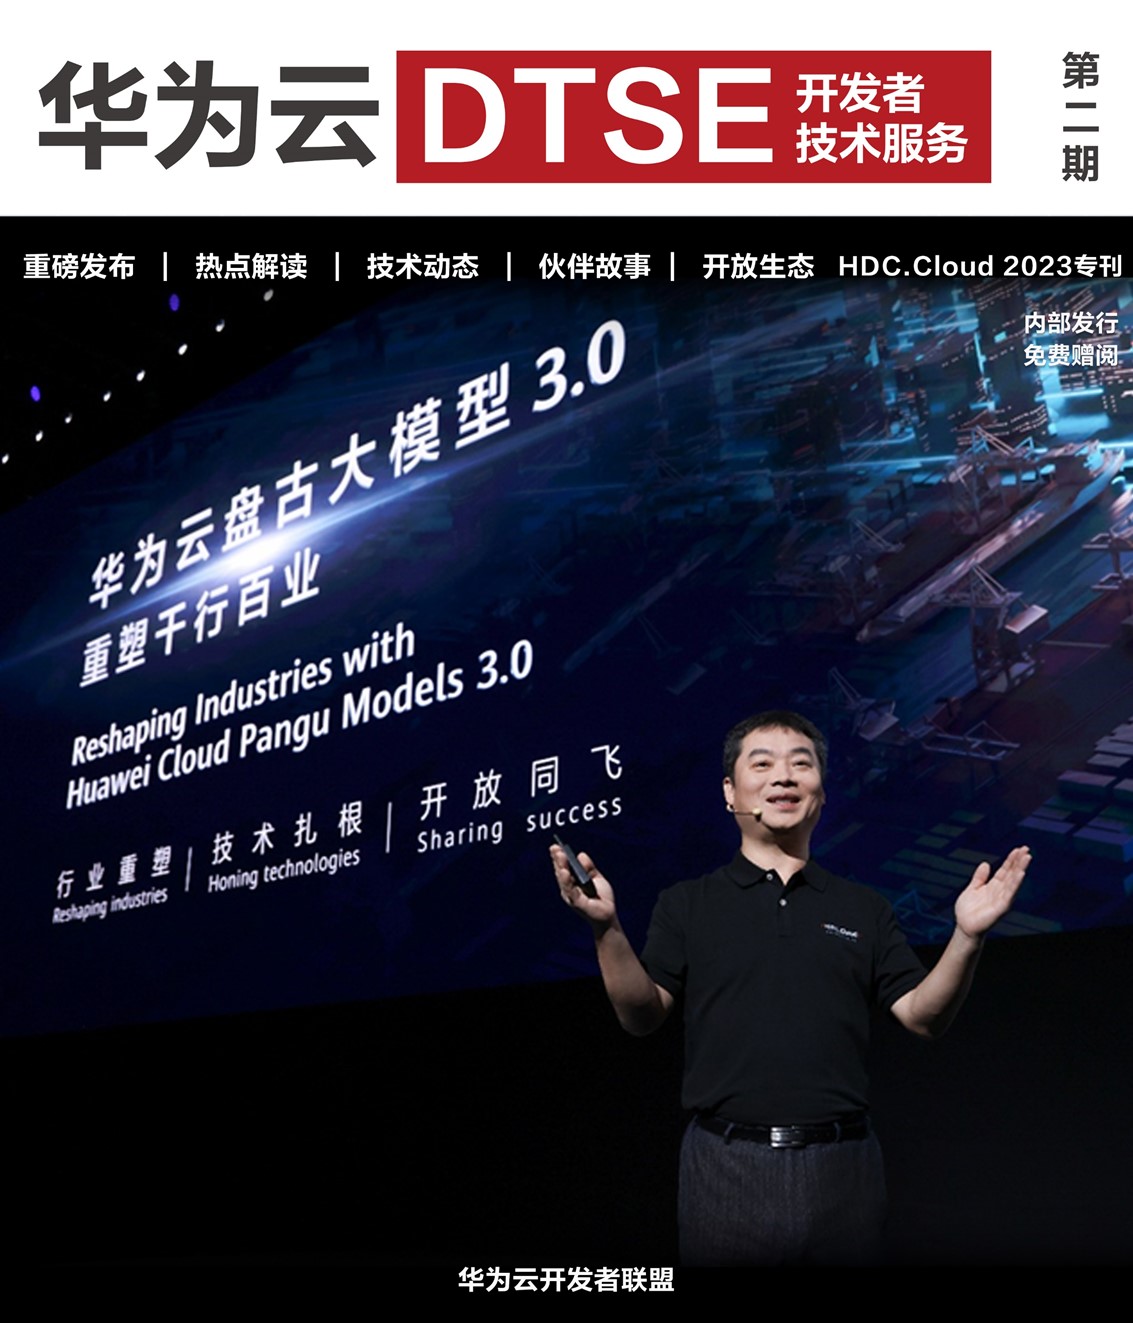 《华为云DTSE》期刊2023年第二季—HDC.Cloud 2023专刊